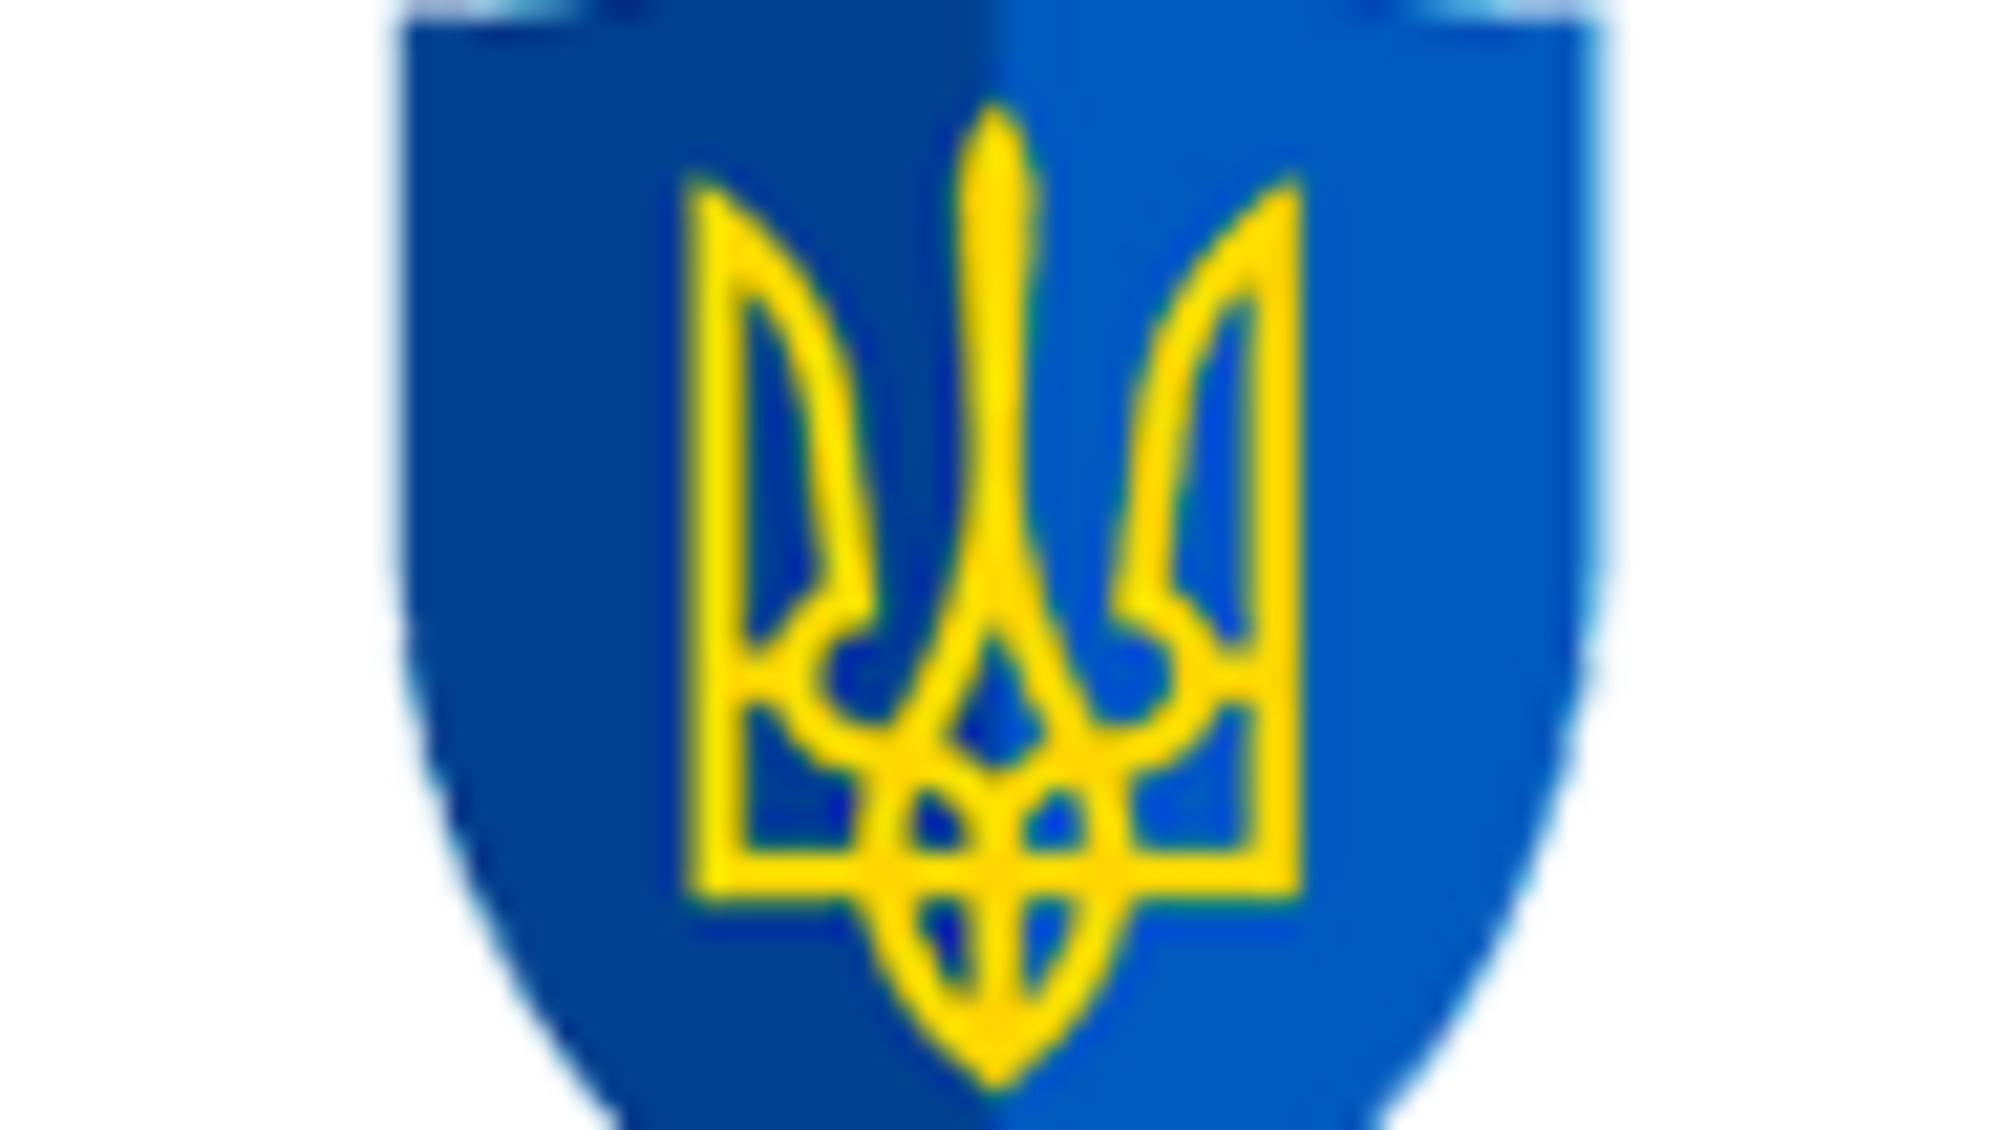 Відбулась перша в історії прокуратури України стратсесія з розробки Стратегії розвитку органів прокуратури до 2023 року